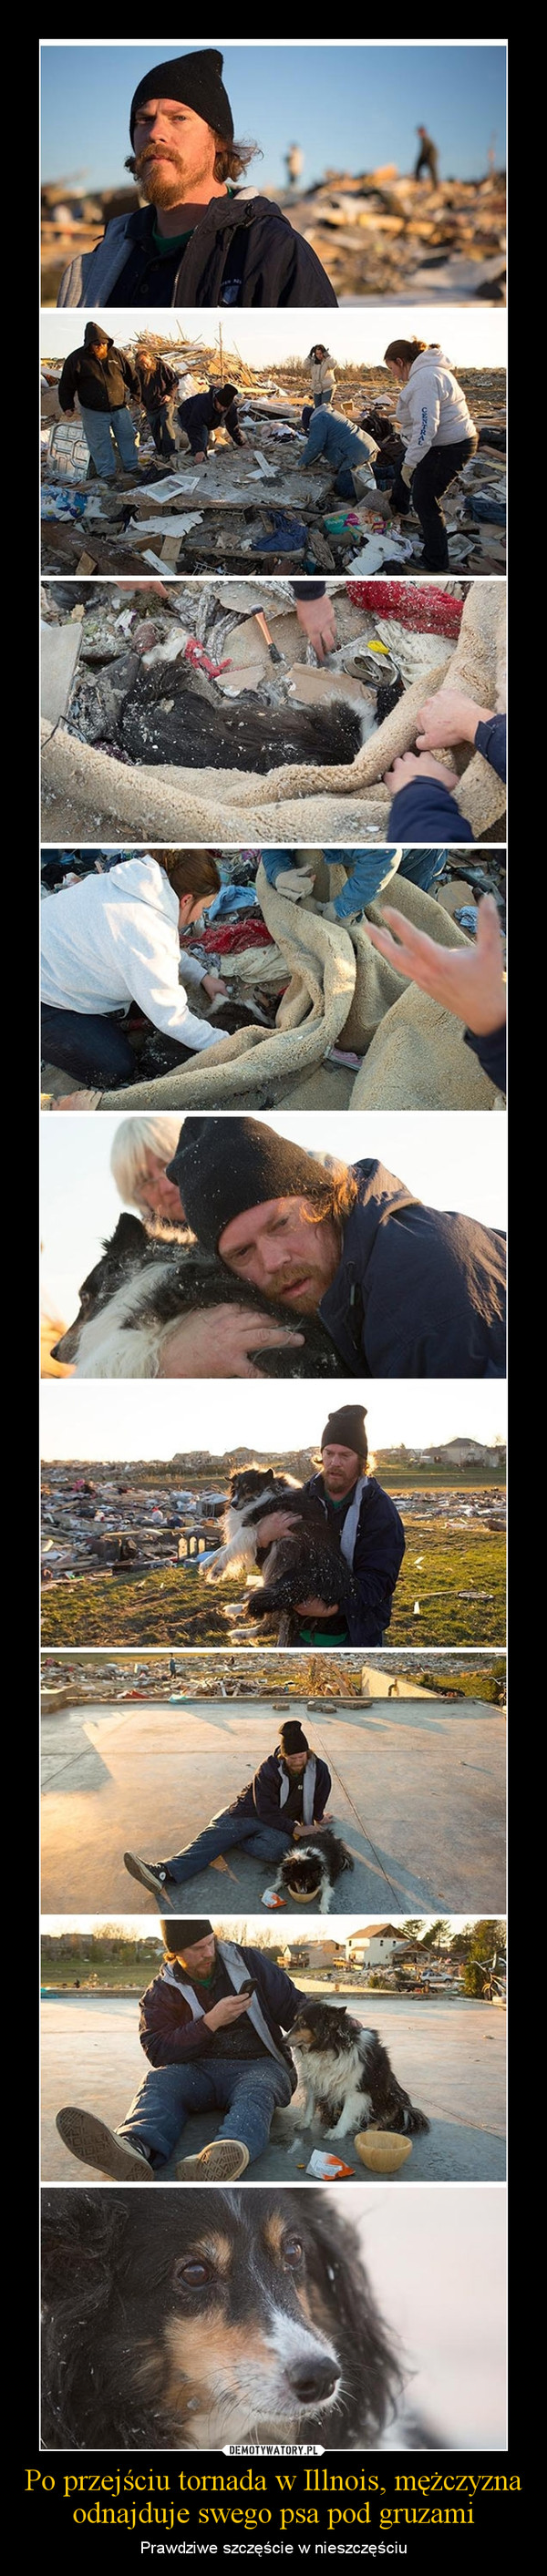 Po przejściu tornada w Illnois, mężczyzna odnajduje swego psa pod gruzami – Prawdziwe szczęście w nieszczęściu 